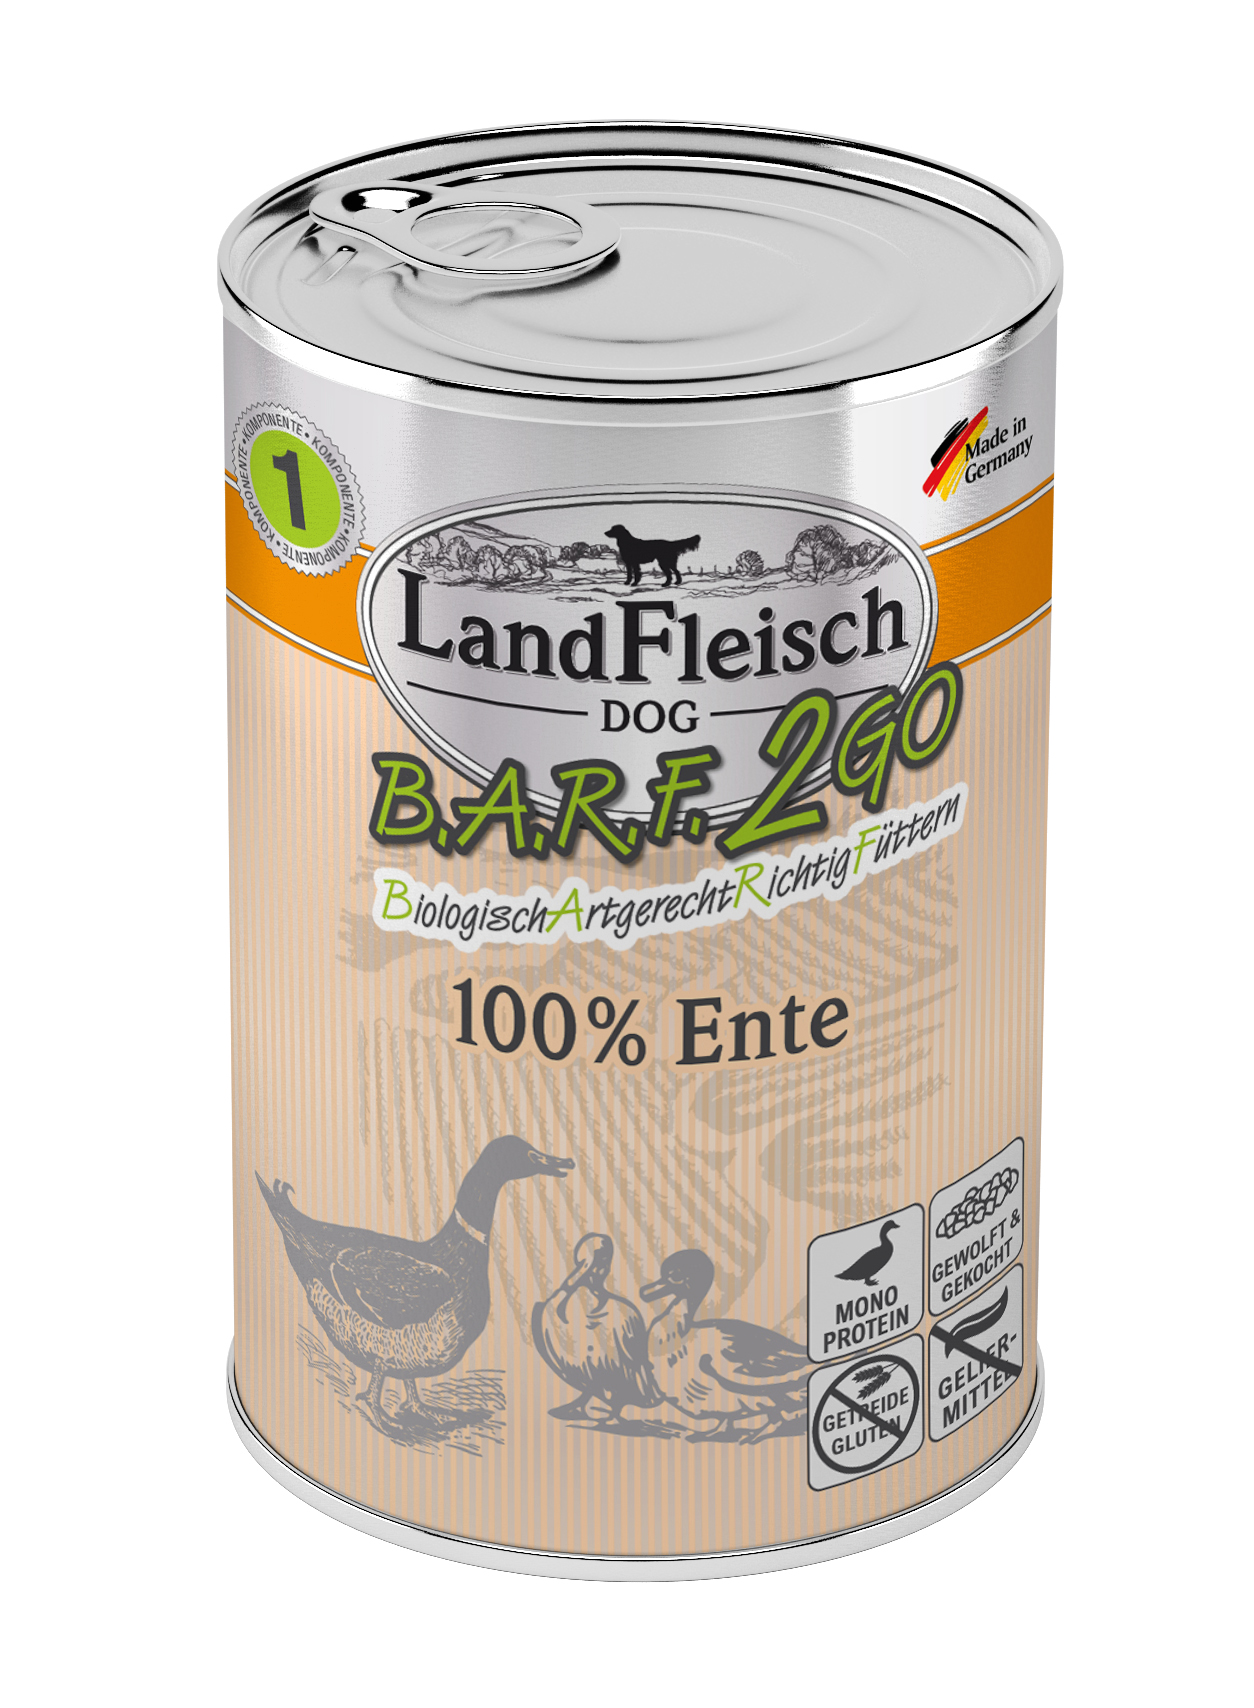 LandFleisch B.A.R.F.2GO 100% von der Ente 400g